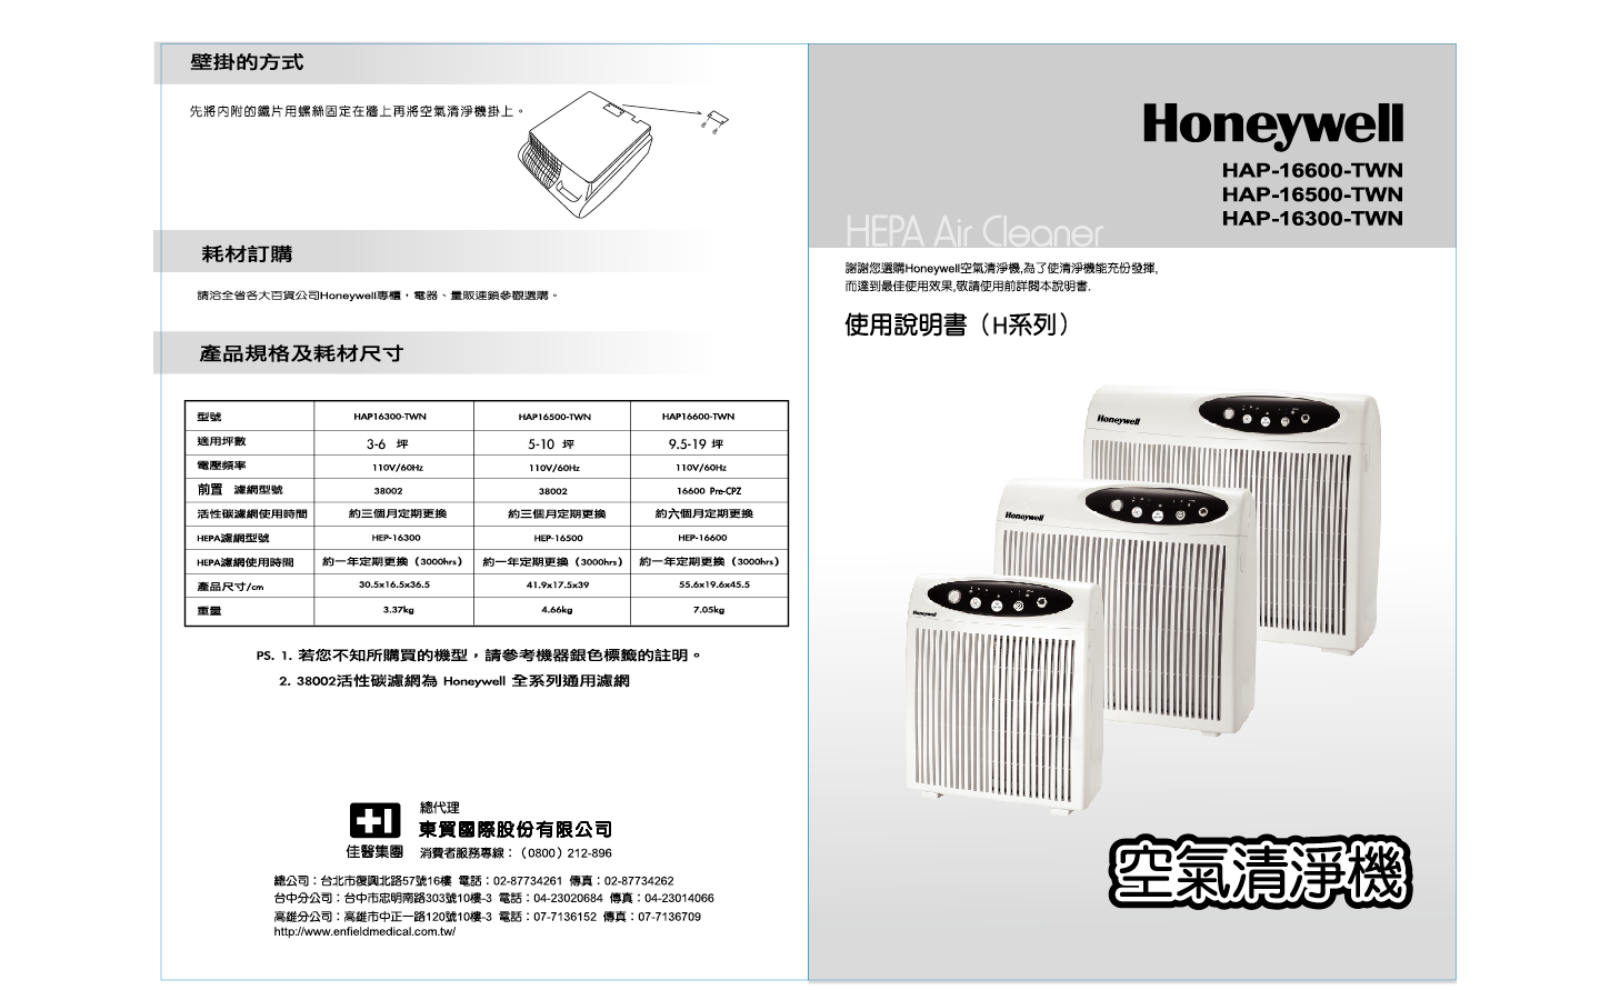 Honeywell HAP-16600, HAP-16500, HAP-16300-TWN User Manual